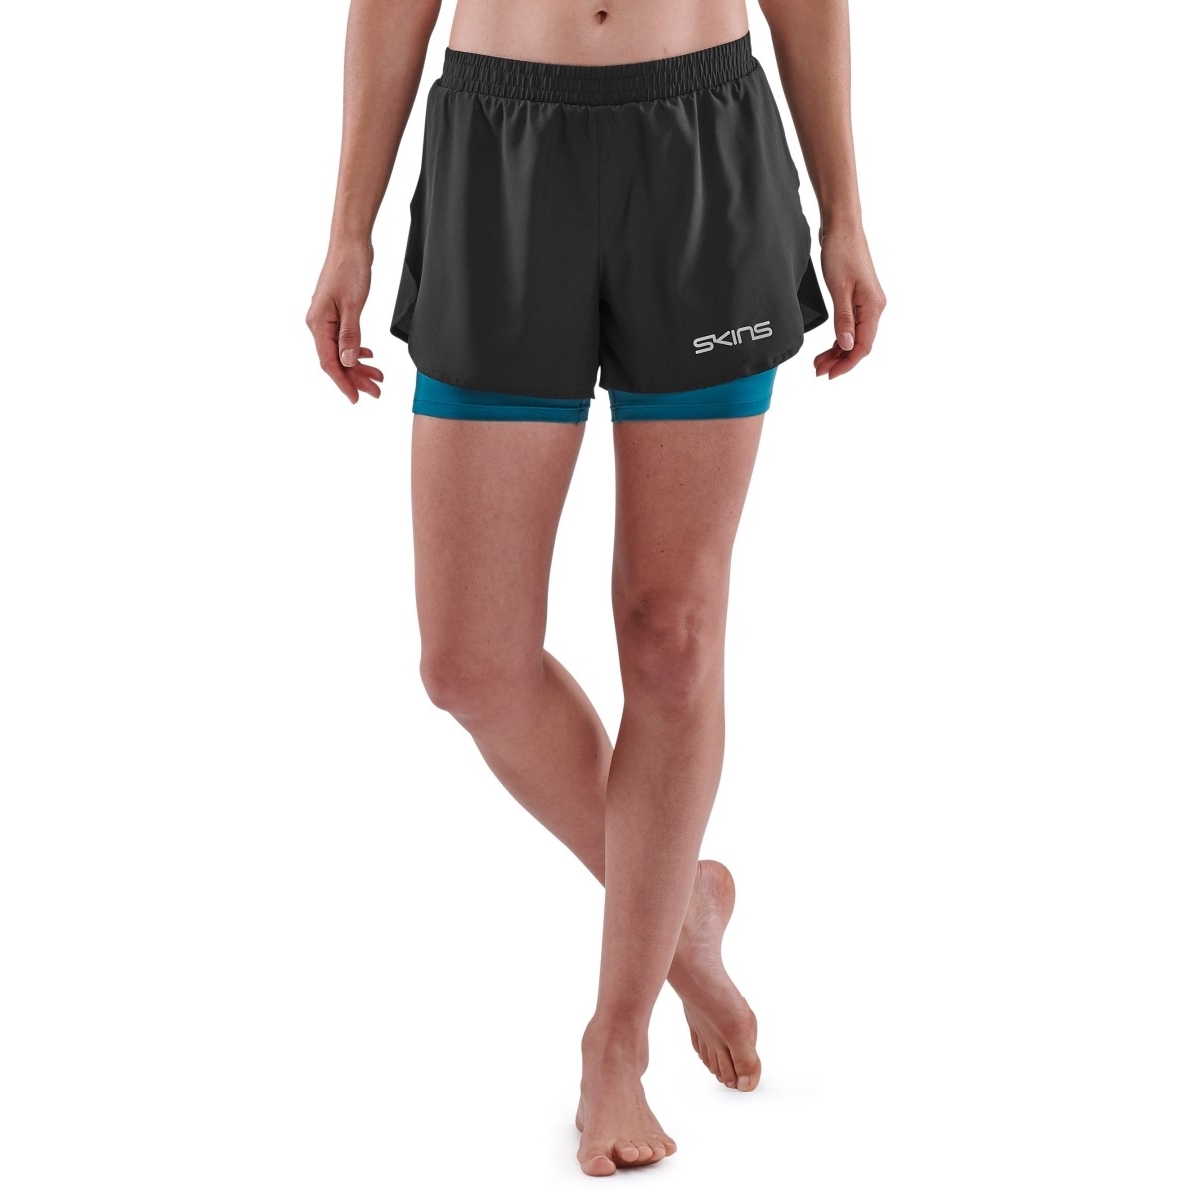 Produktbild von SKINS 3-Series X-Fit Shorts Damen - Schwarz